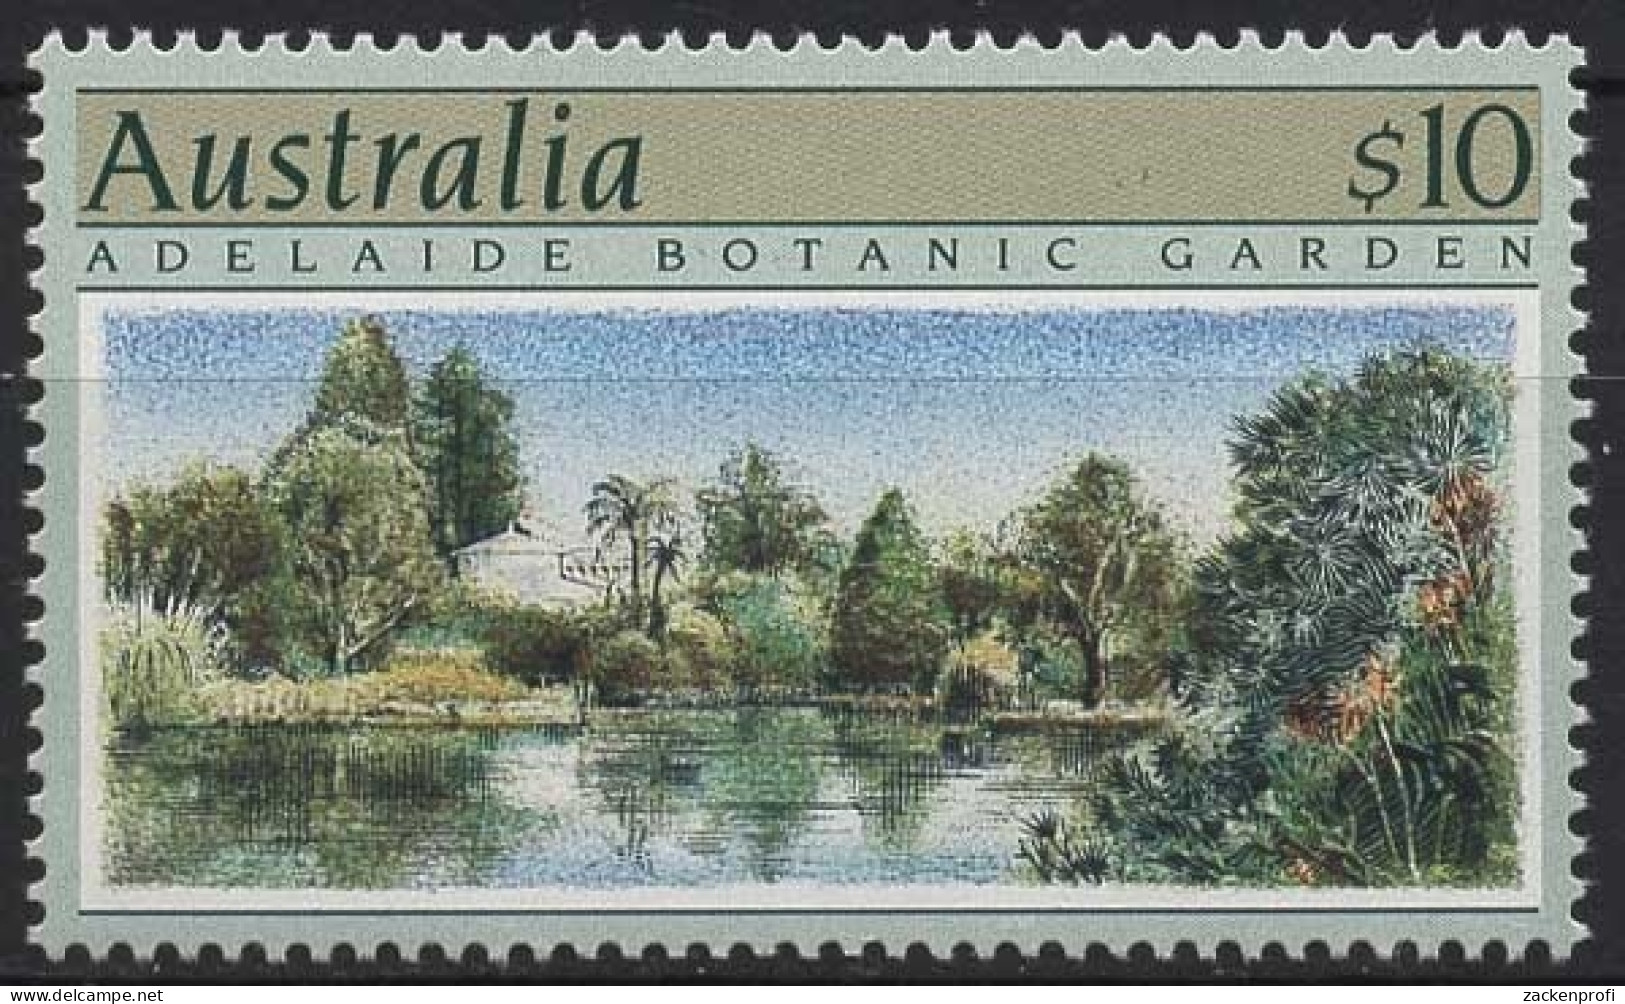 Australien 1989 Gartenanlagen 1150 Postfrisch - Neufs